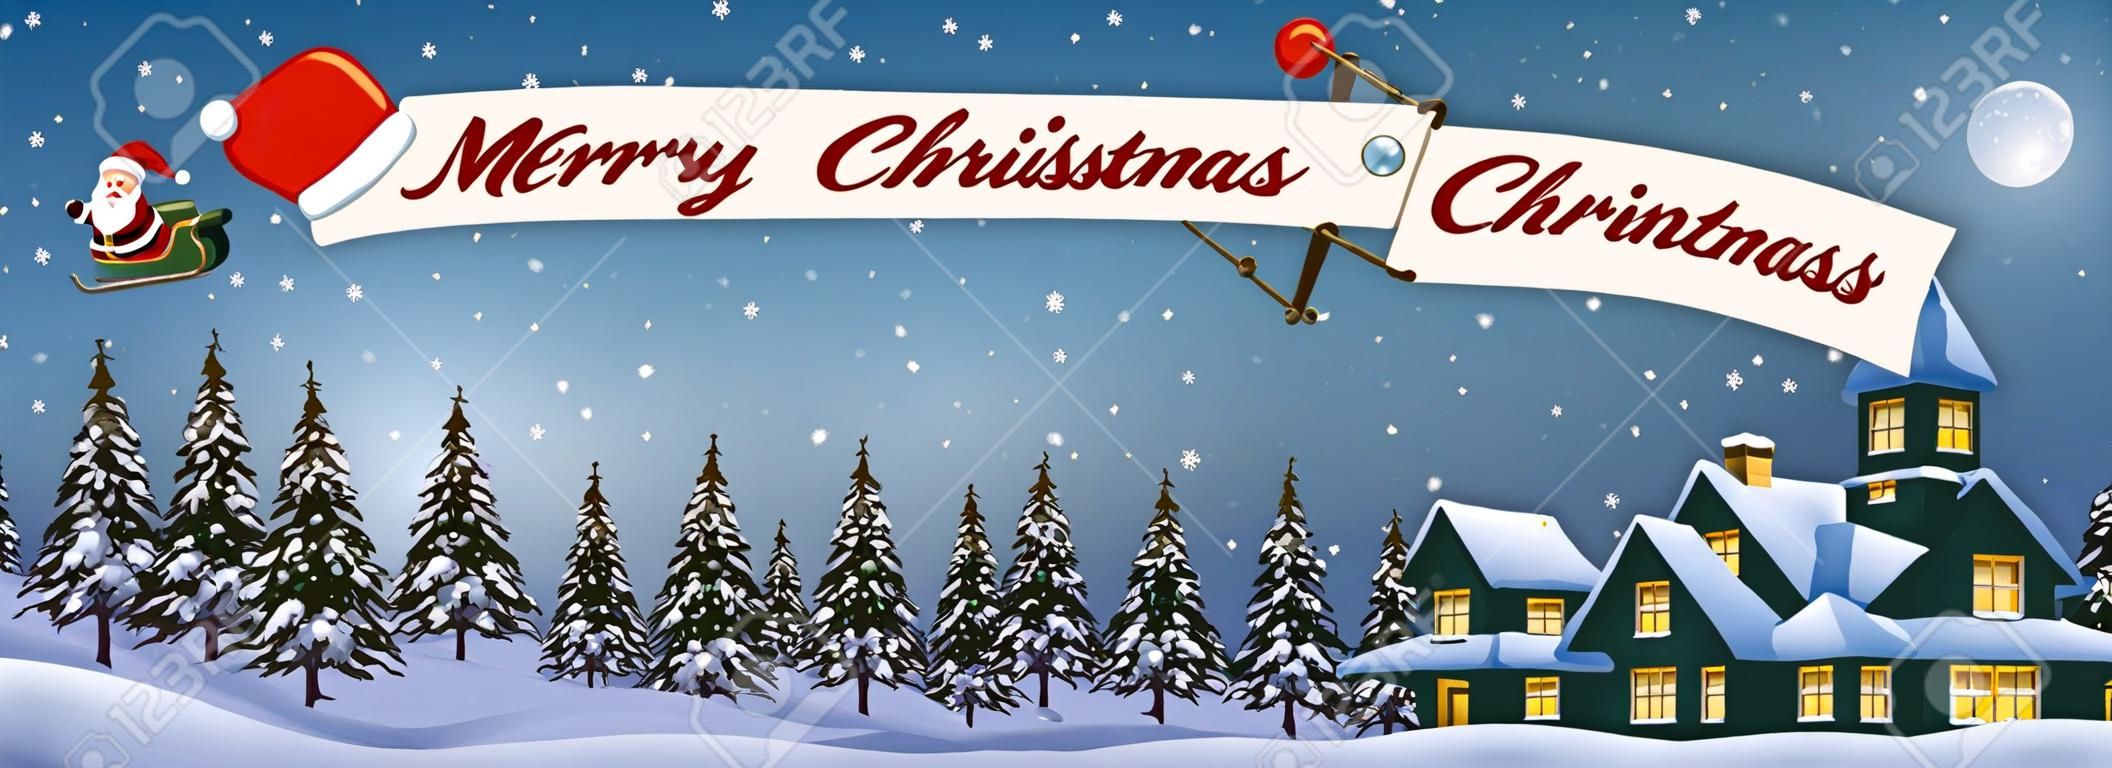 クリスマスの雪の風景を夜メリー クリスマス メッセージ バナーと飛行機で飛んでサンタ クロース漫画